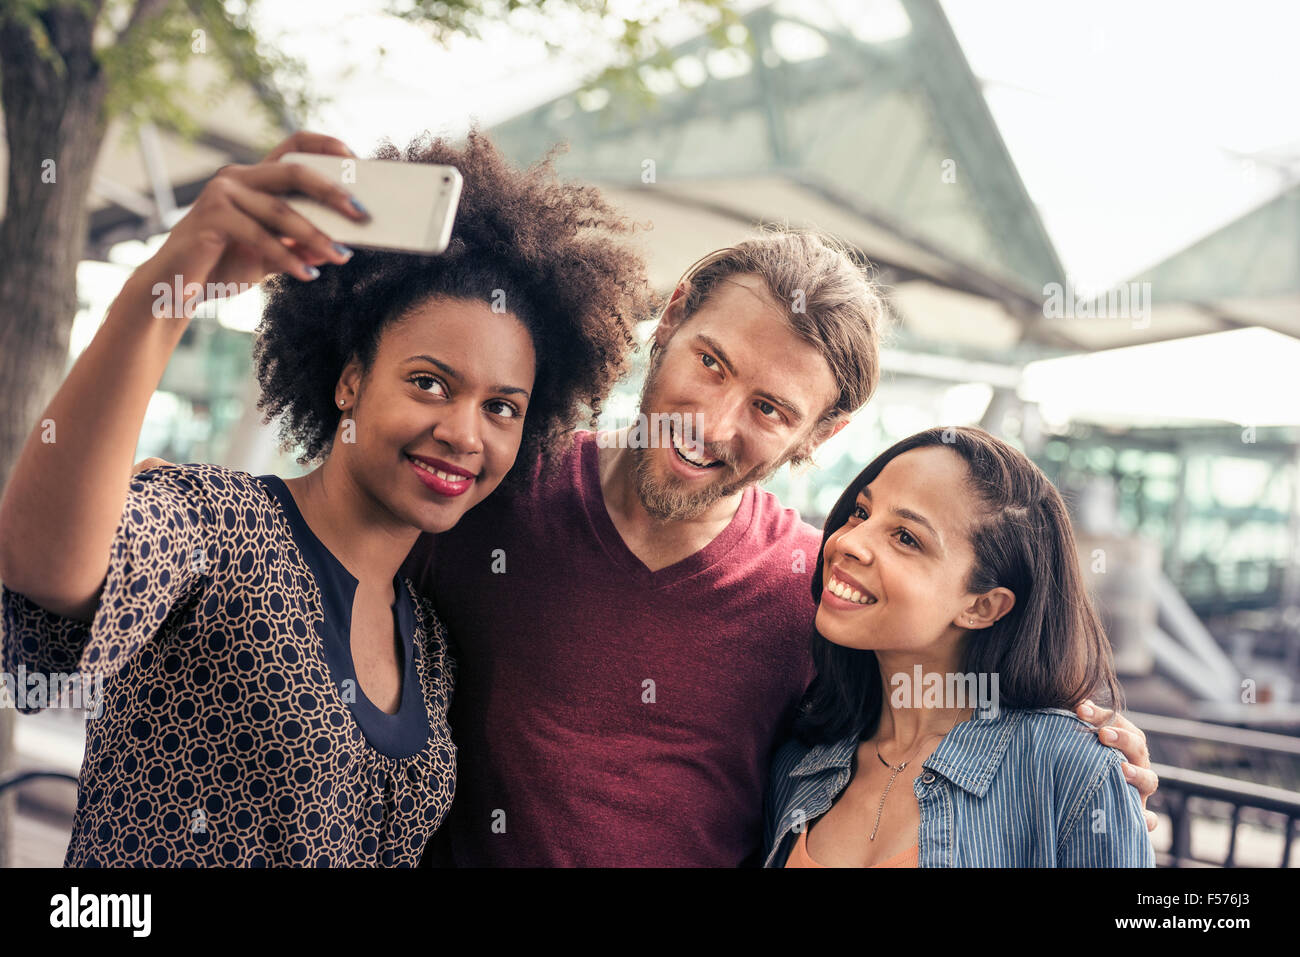 Drei Menschen, ein Mann und zwei Frauen, die Selfies im park Stockfoto